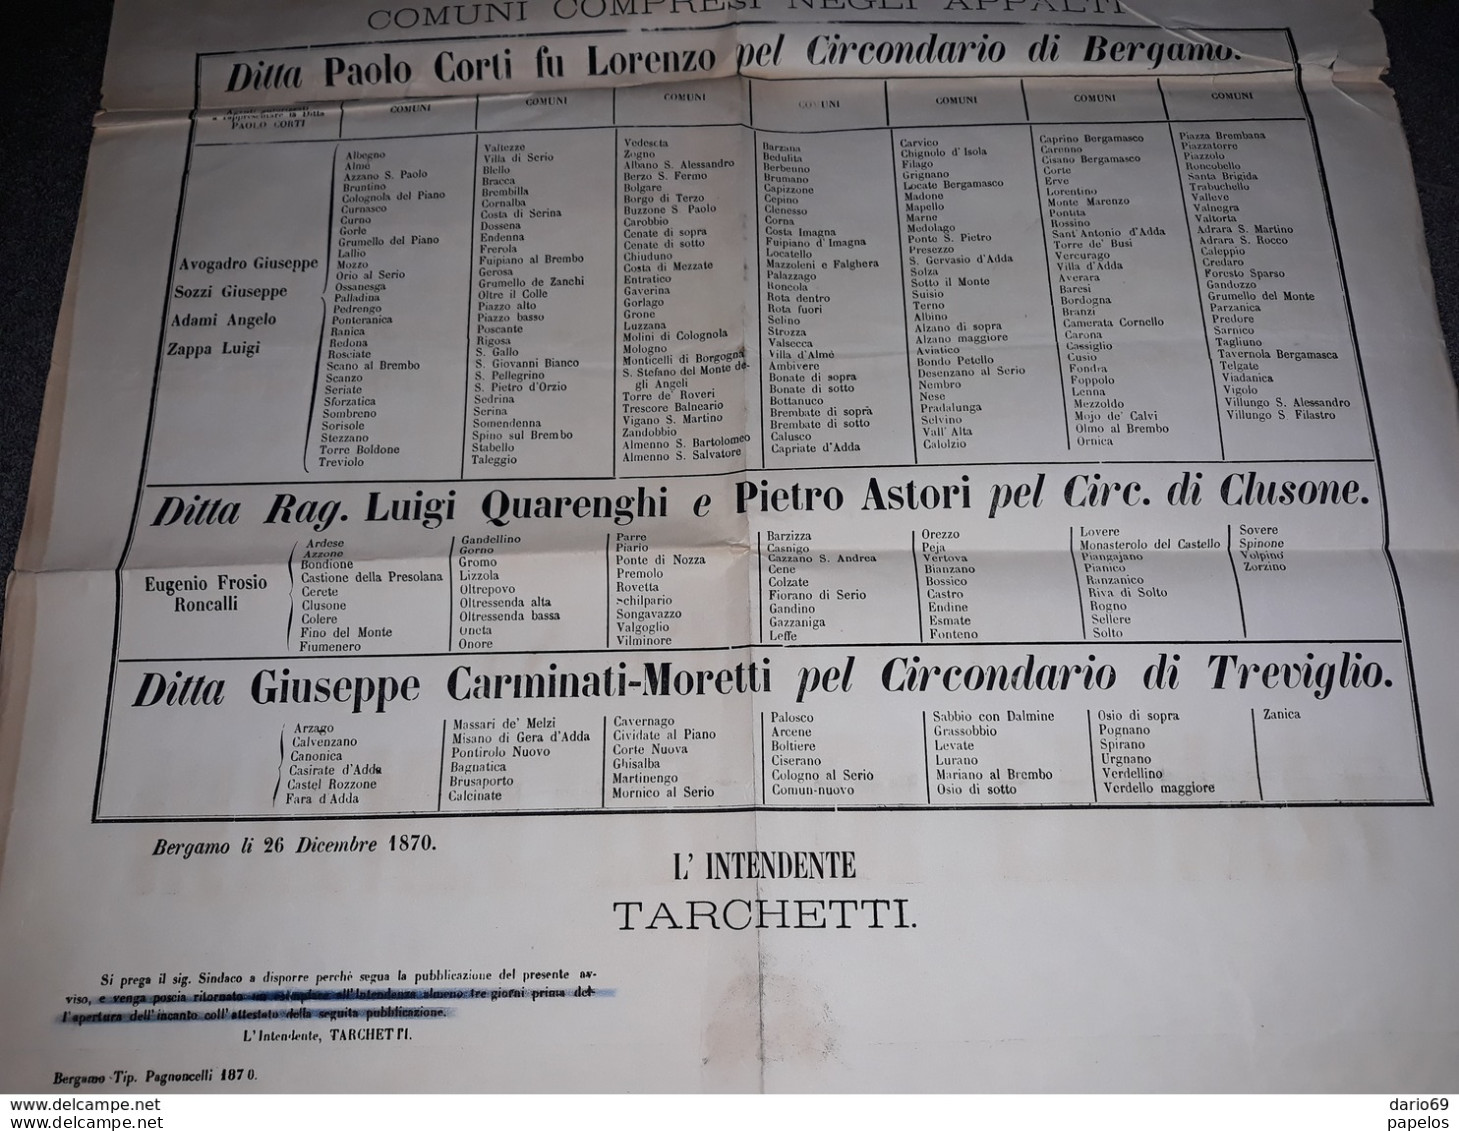 1870  MANIFESTO  BERGAMO  INTENDENZA DI FINANZA - Historische Dokumente